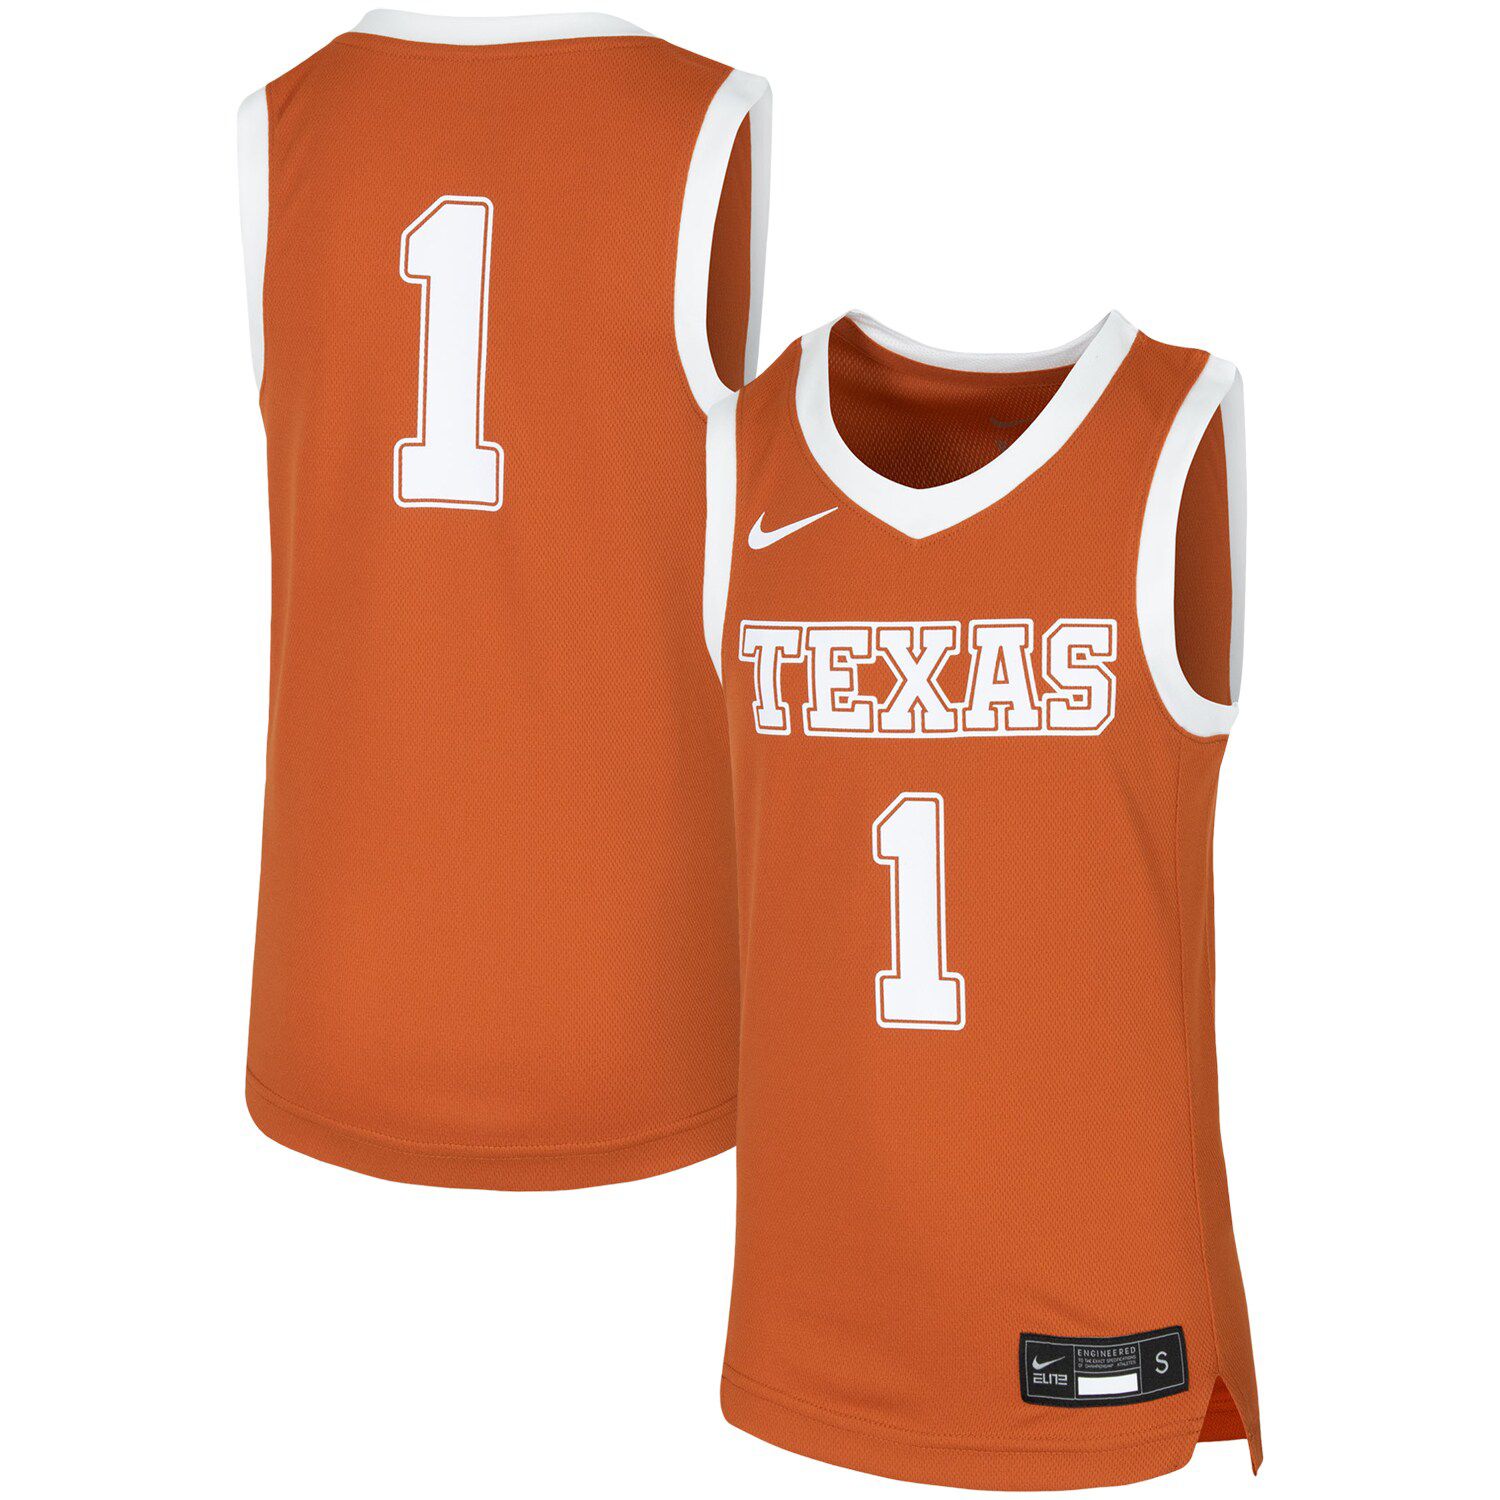 texas longhorn basketball jersey